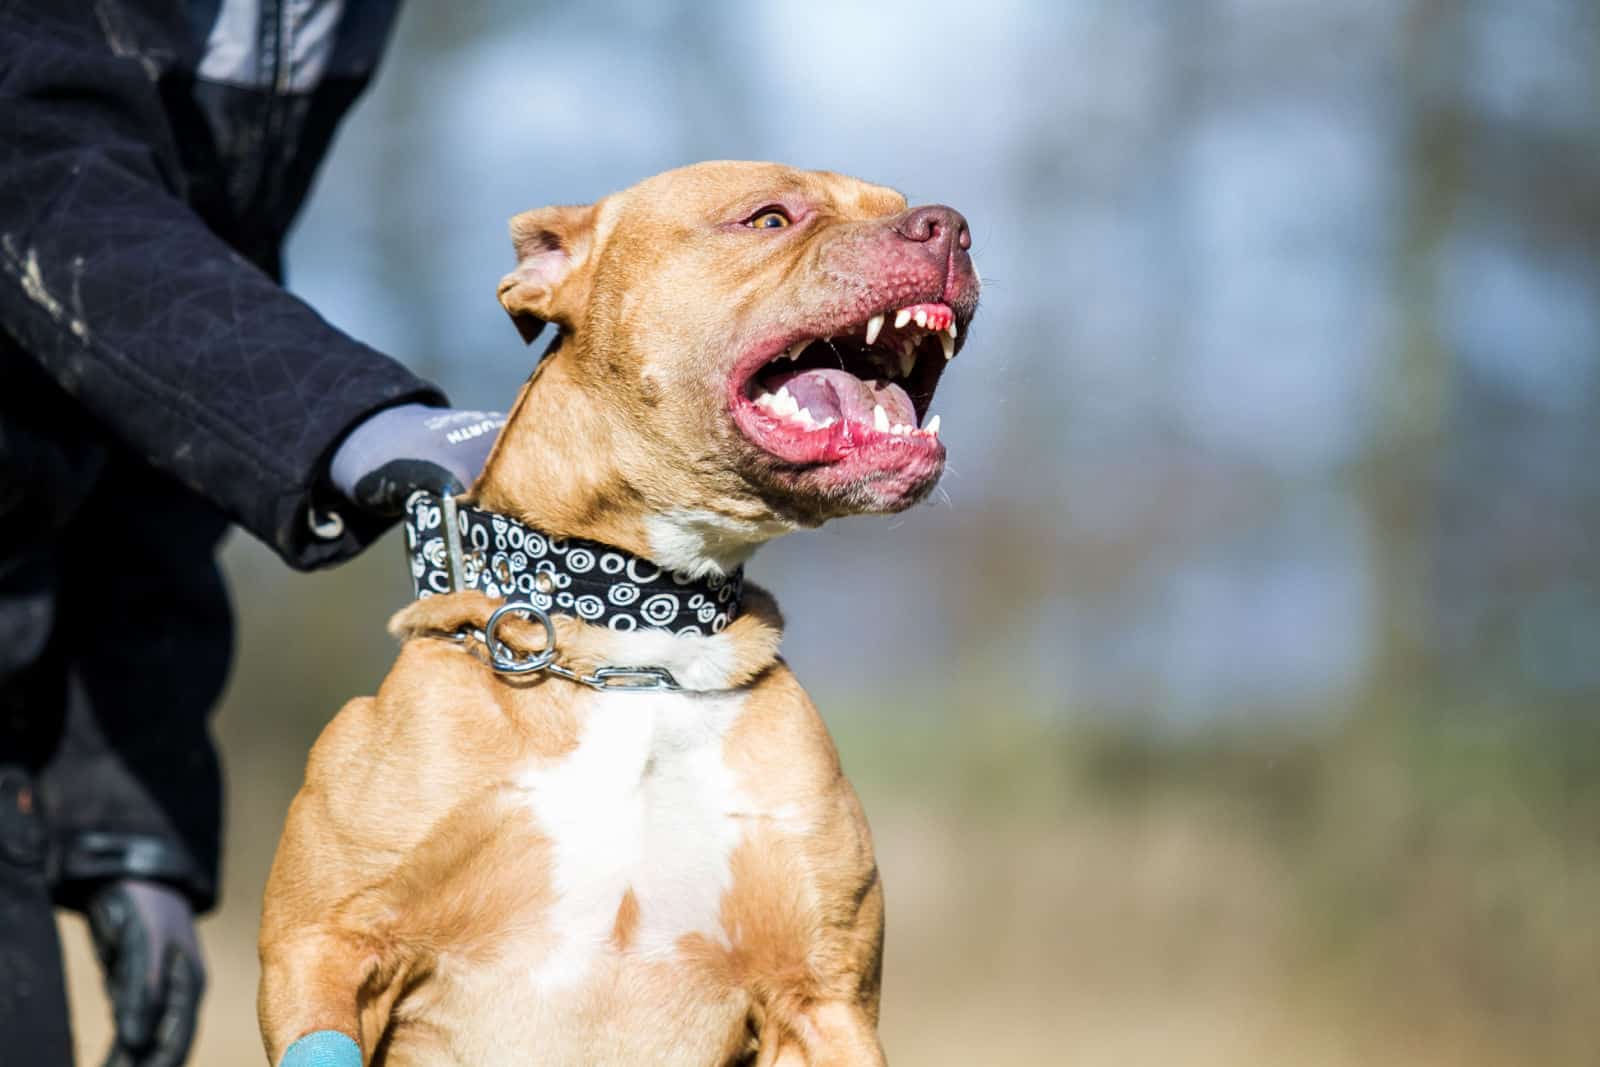 Agressive pitbull terrier